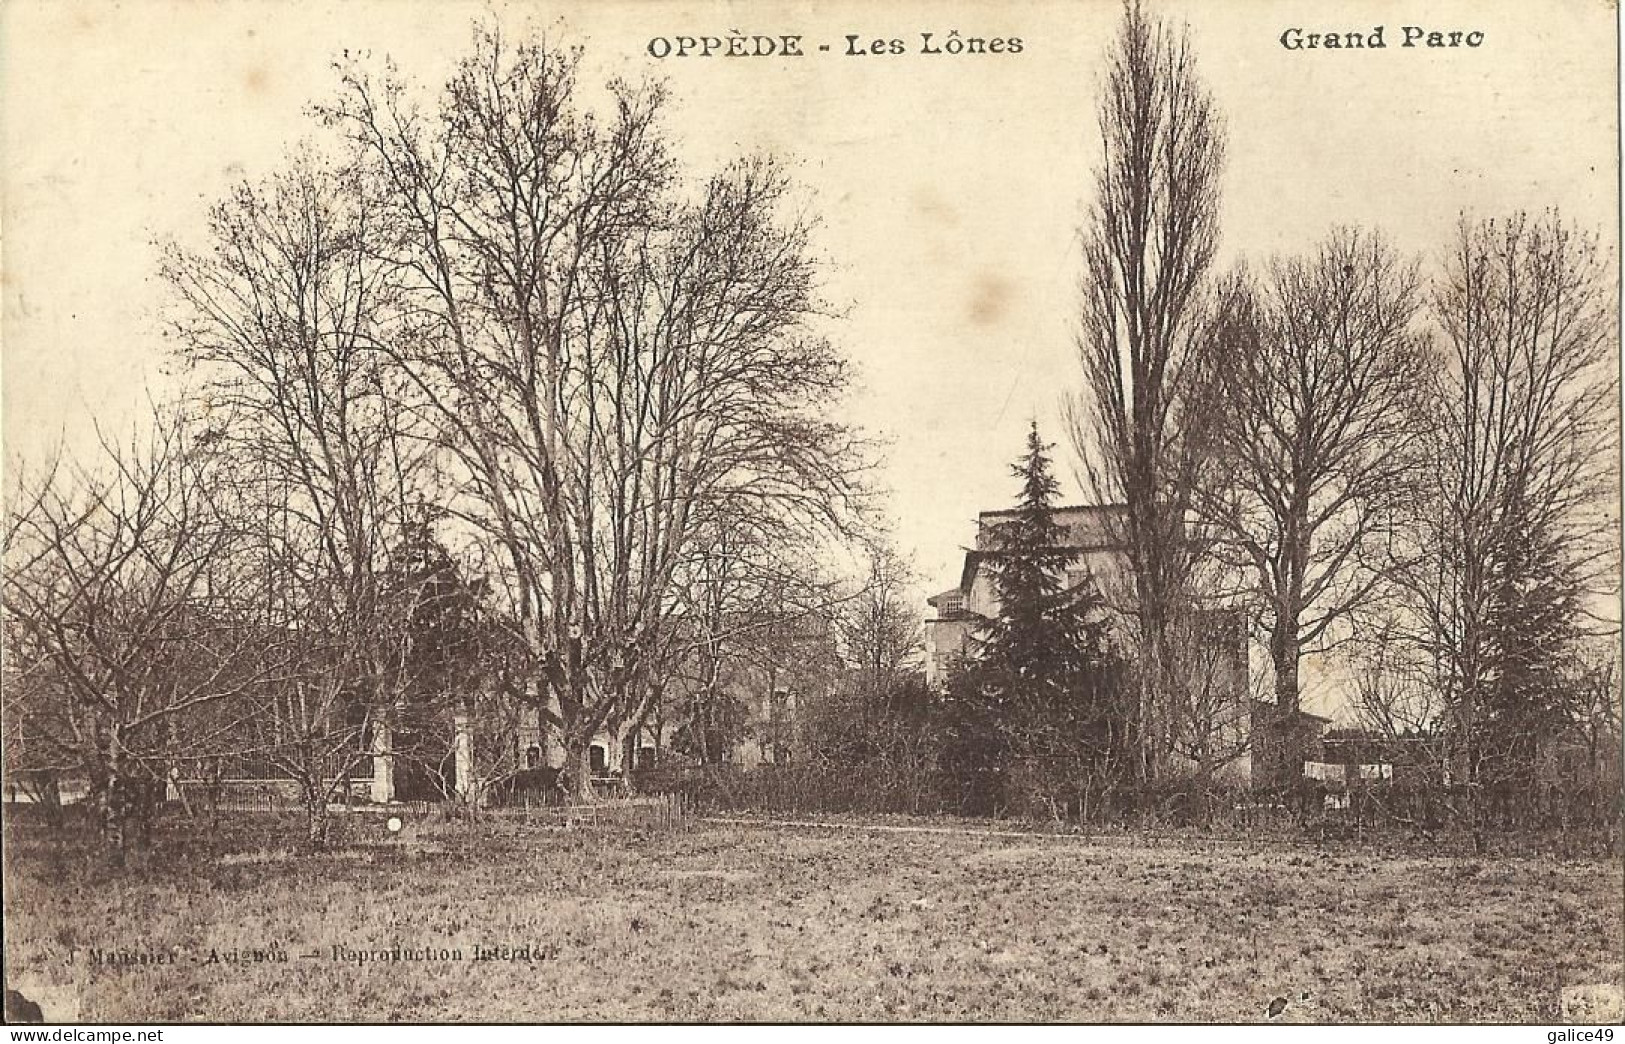 7820 CPA Oppède - Les Lônes - Oppede Le Vieux